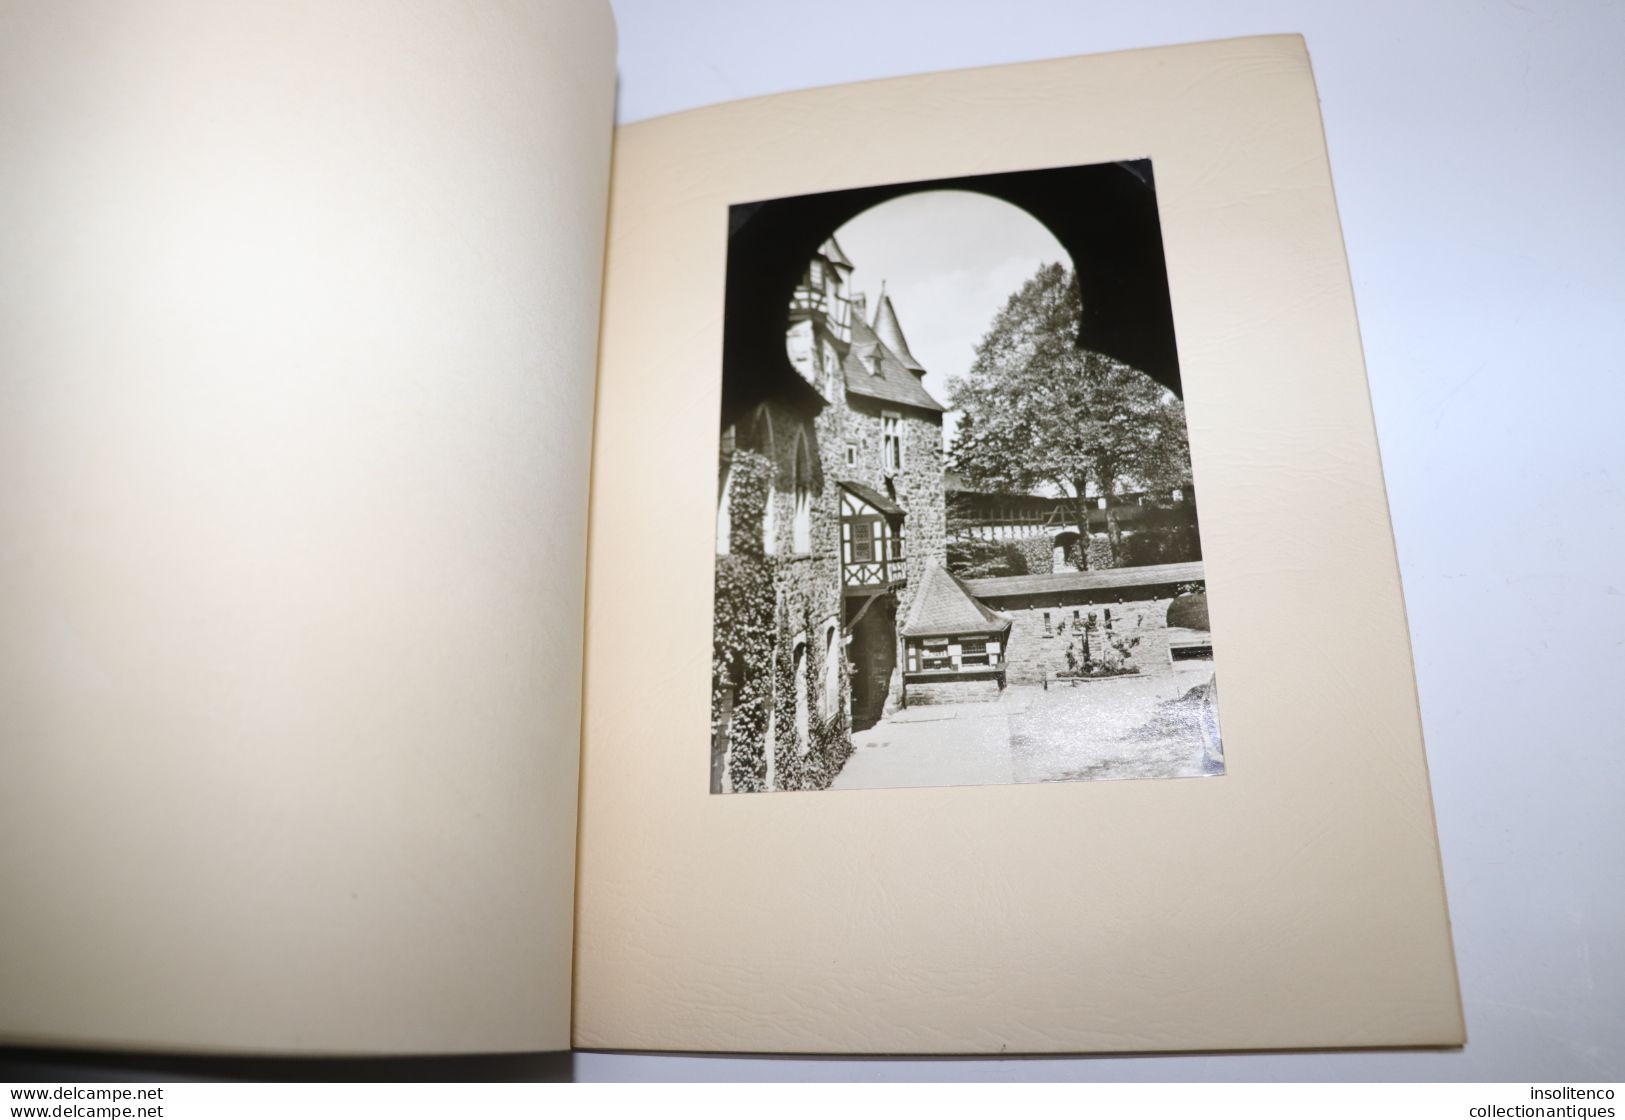 Livre Schloss Burg an der Wupper - Hans Neubarth Verlag - 1956 - album de cartes postales photographiques du château